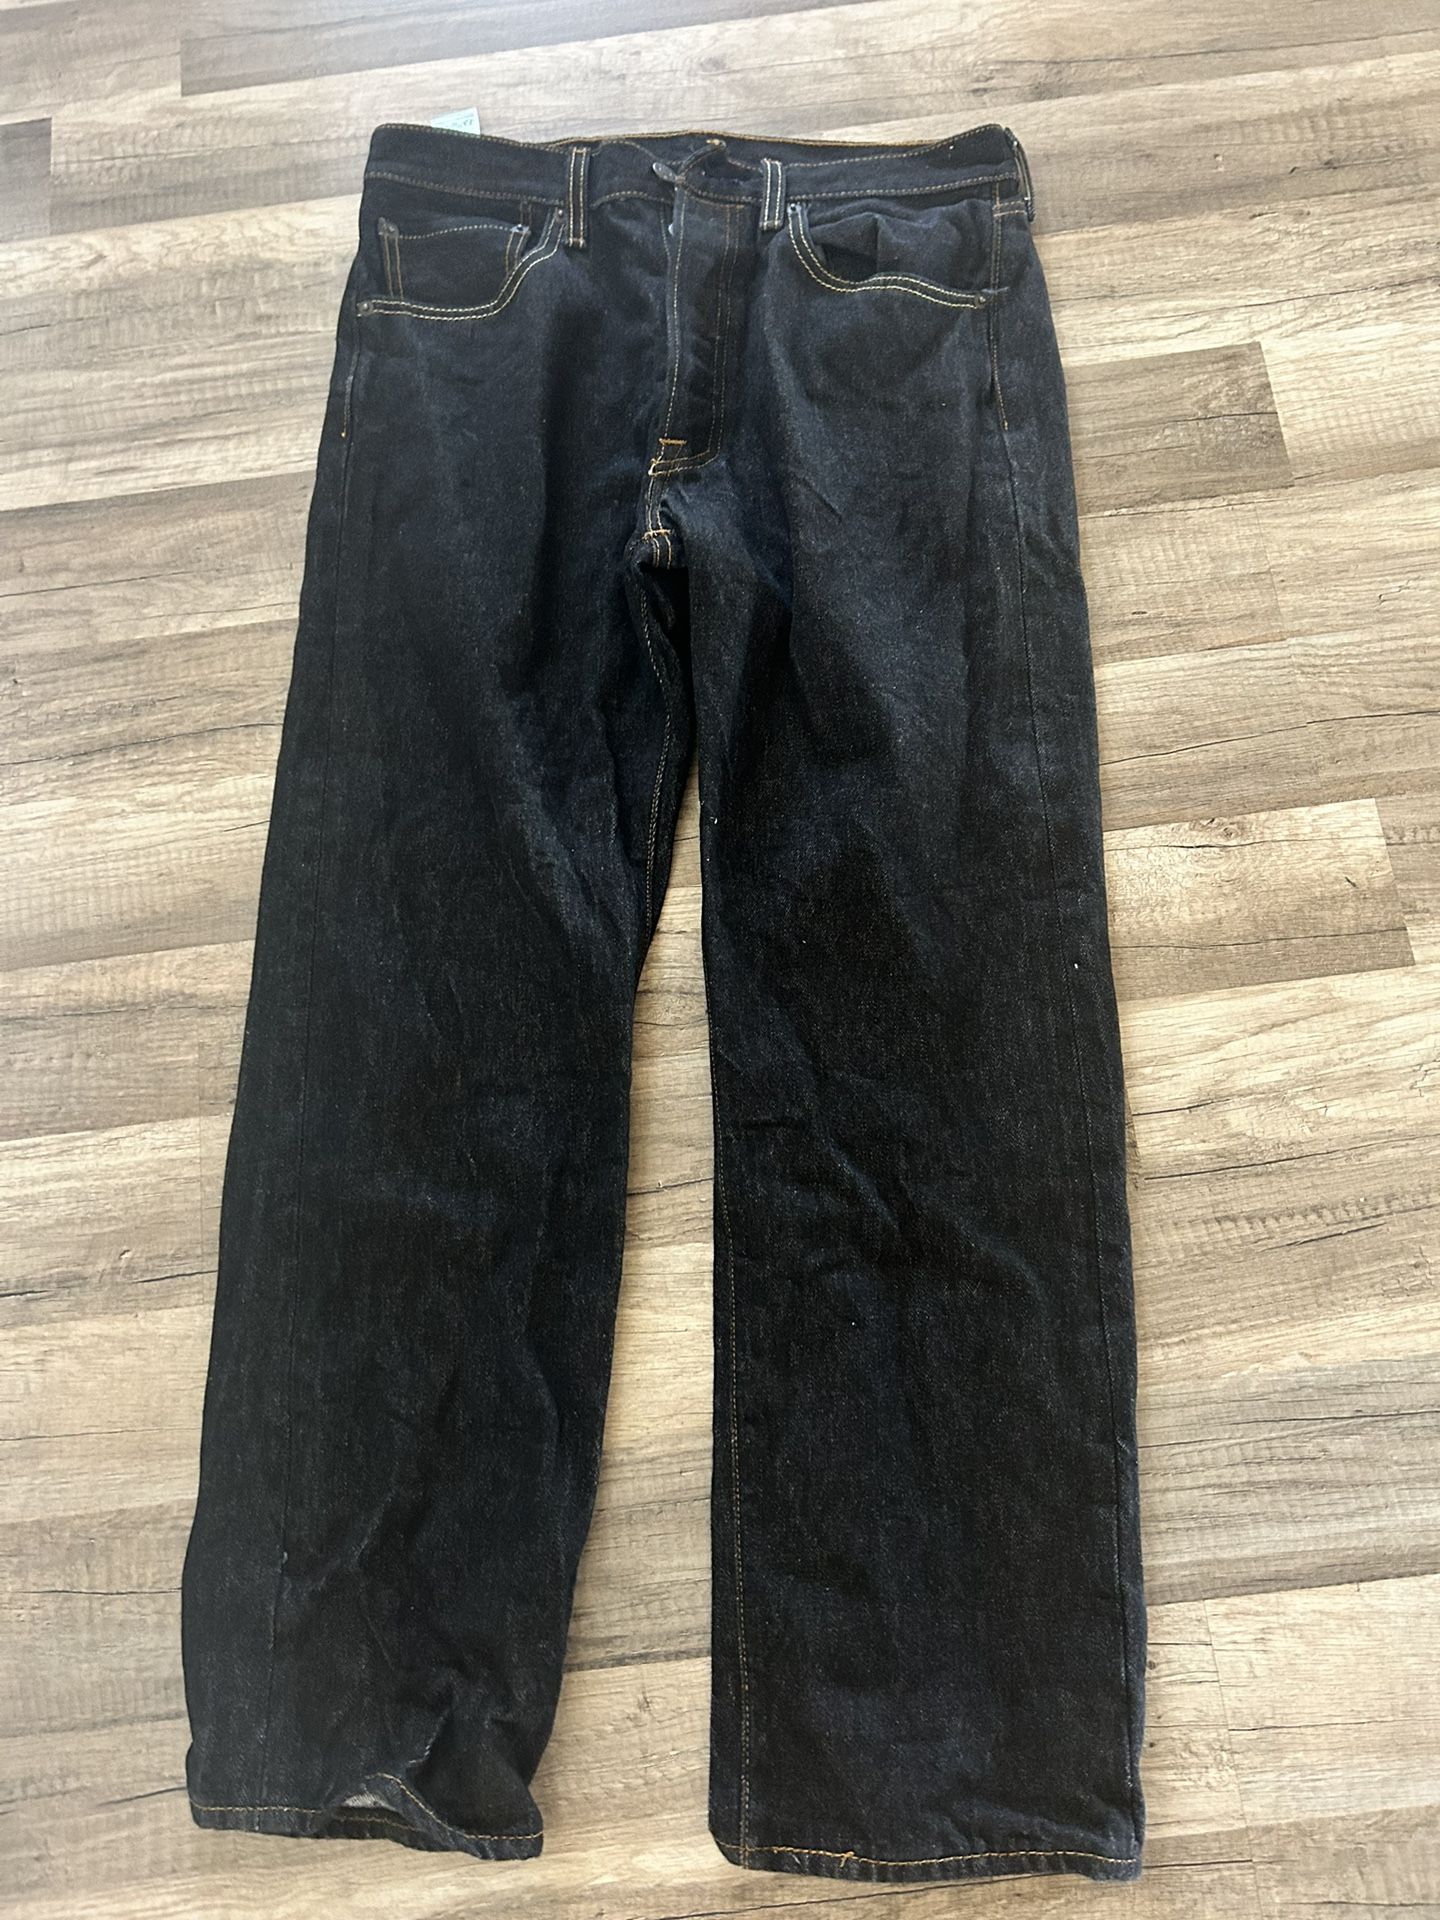 Levi's - Men's 501 Original Fit Jeans 